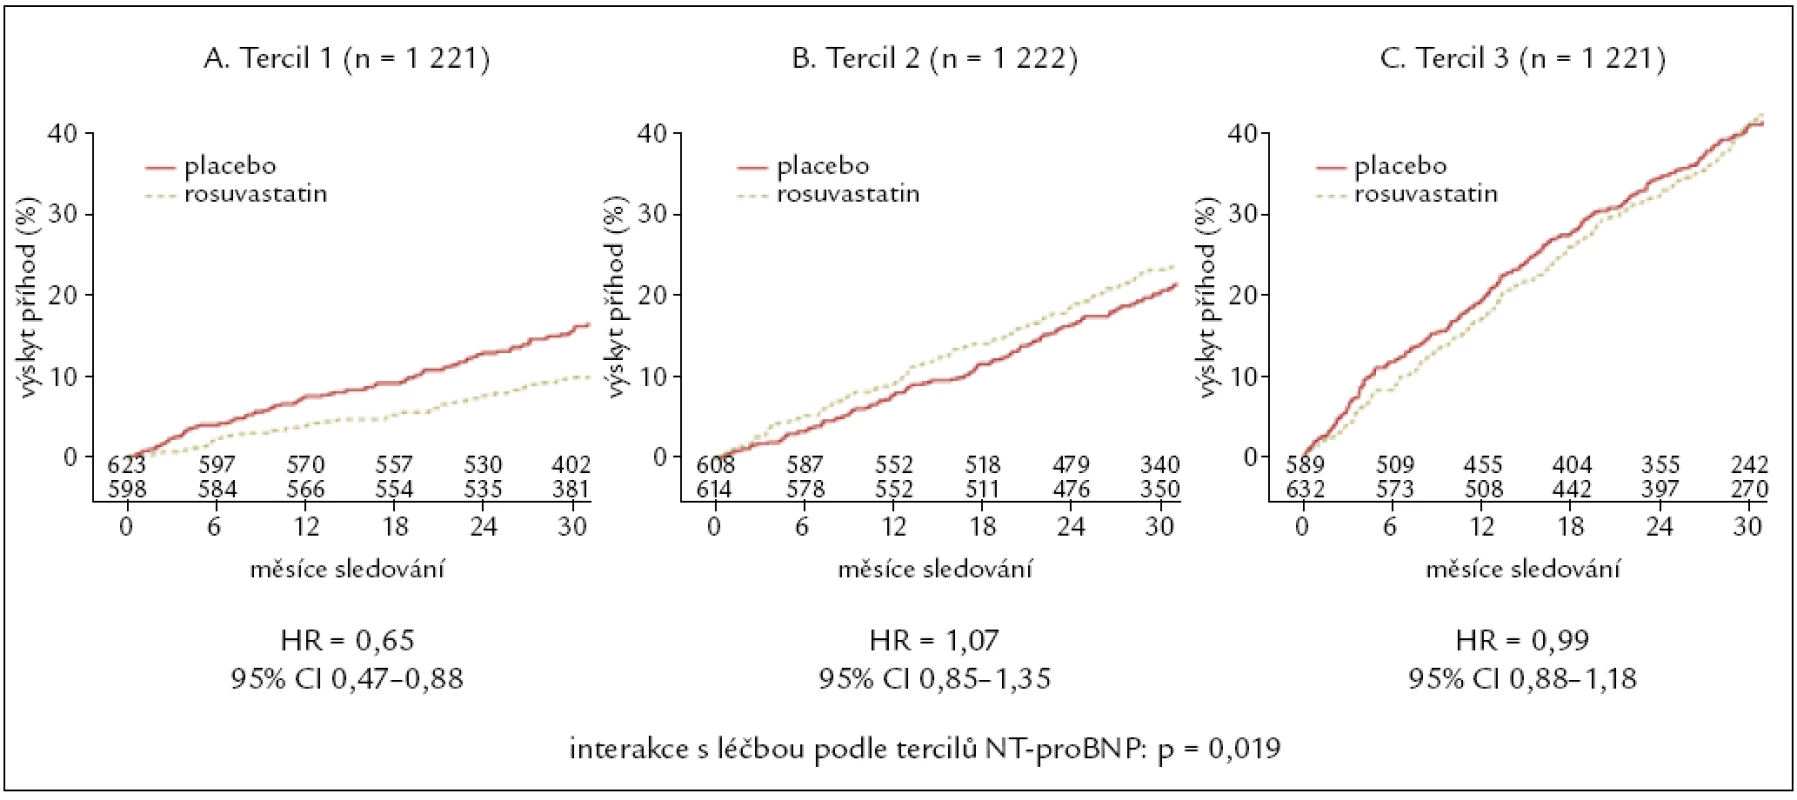 Podstudie klinické studie CORONA. Interakce účinku rosuvastatinu v závislosti na tercilu bazální plazmatické koncentrace NT-proBNP [13]. Výskyt primárního kombinovaného klinického ukazatele (součet kardiovaskulárních úmrtí a nefatálních infarktů myokardu a mozkových cévních příhod) u nemocných s bazální plazmatickou koncentrací NT-proBNP:
(A) v prvním (nejnižším) tercilu (&lt; 868 pg/ml), (B) ve druhém (středním) tercilu (≥ 868 a &lt; 2 348 pg/ml), (C) ve třetím (nejvyšším) tercilu (≥ 2 348 pg/ml).

HR – poměr šancí (hazard ratio), CI – meze spolehlivosti (confidence interval), p – hladina statistické významnosti, NT-proBNP – N-terminální konec prohormonu BNP